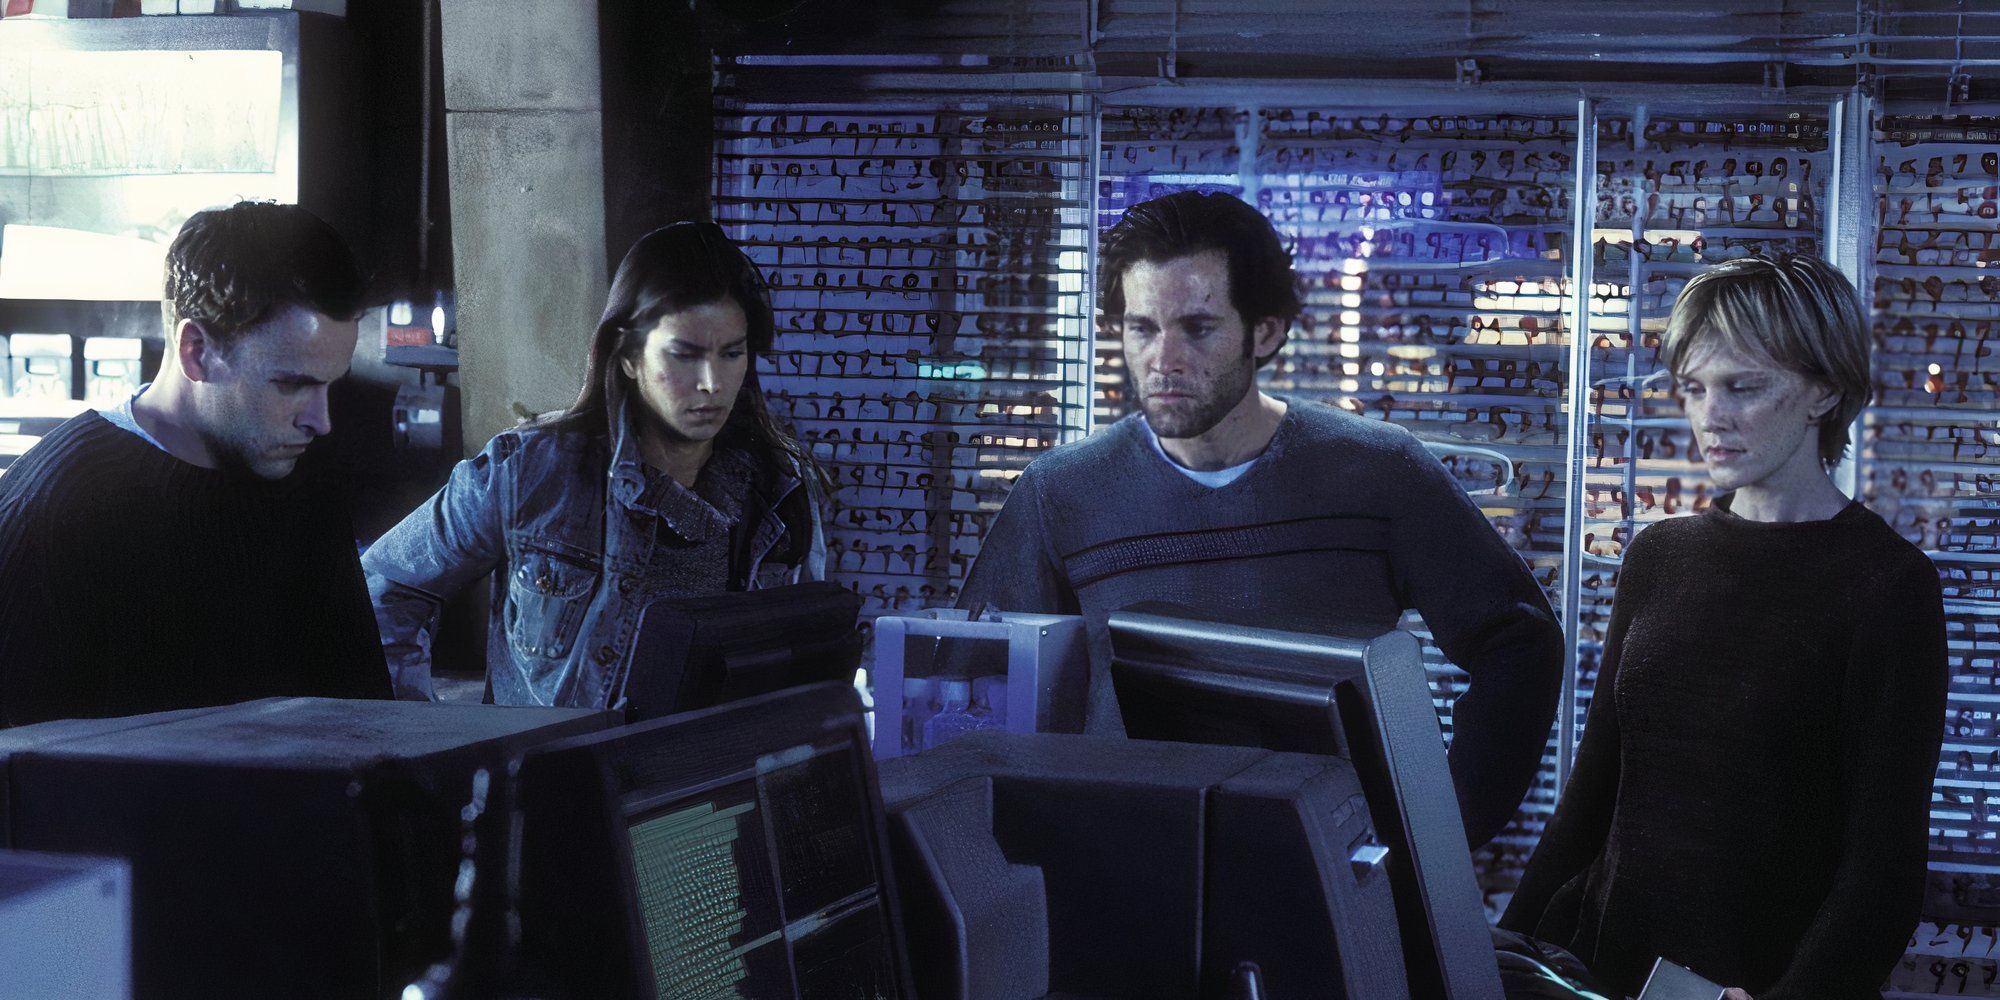 O elenco de Mindhunters está reunido em torno de uma variedade de computadores. 